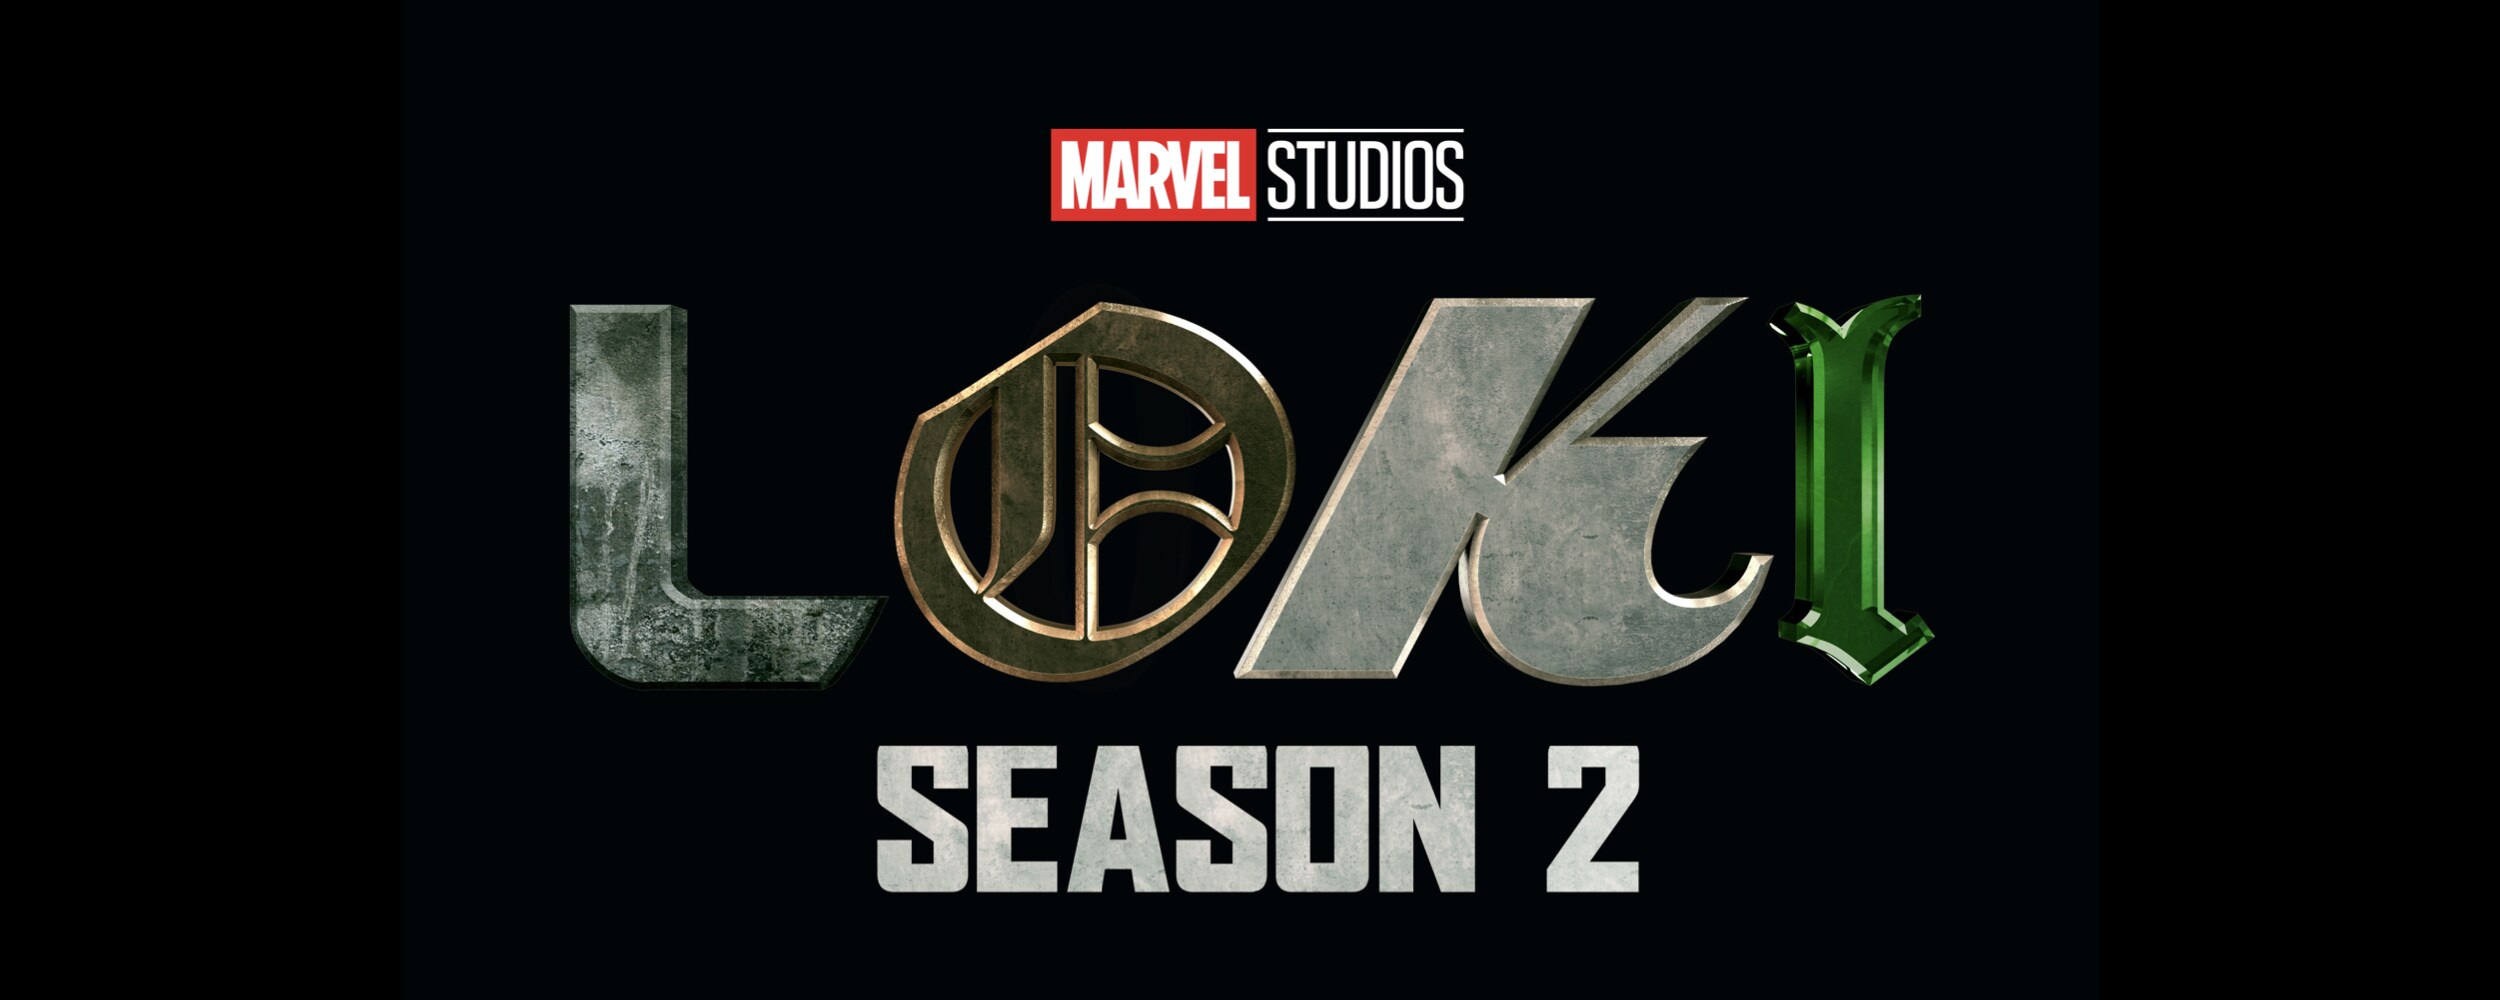 Loki season 2 release schedule  When is episode 6 on Disney Plus